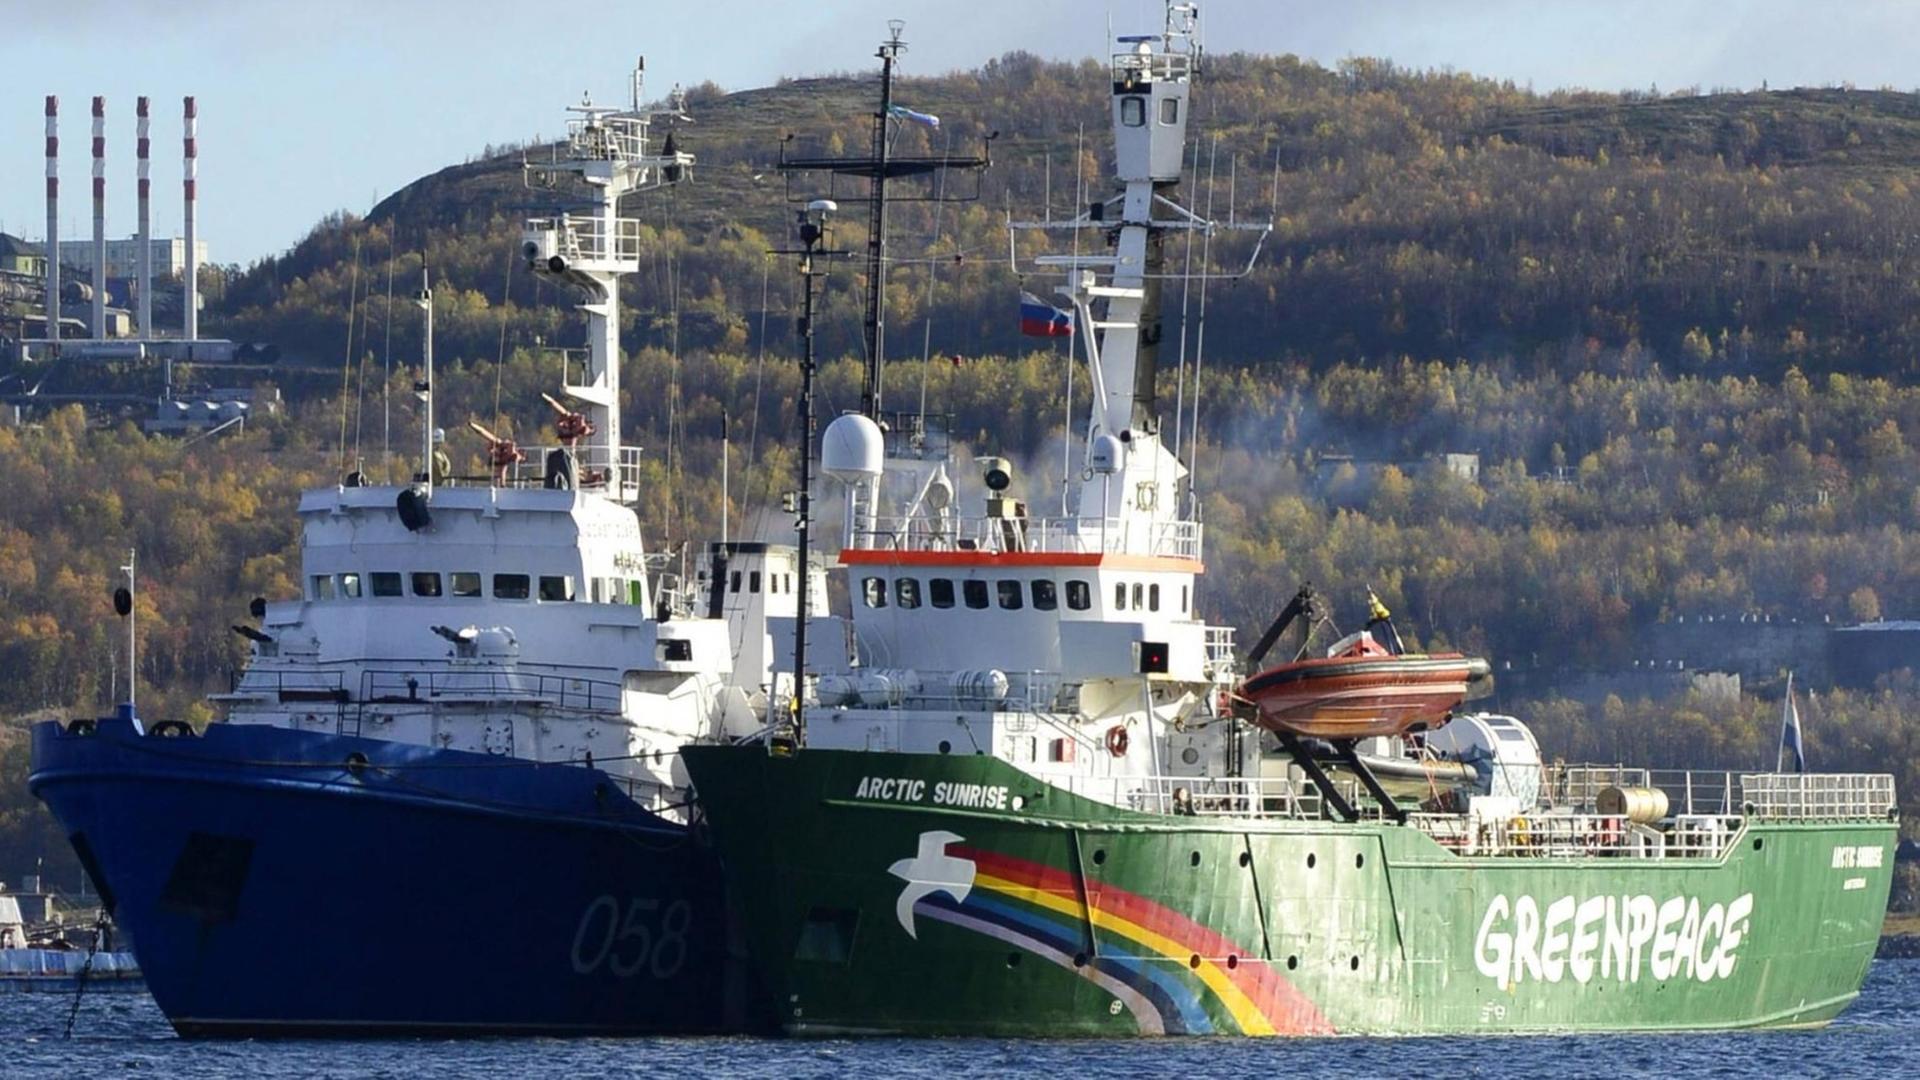 Das Greenpeace-Schiff "Arctic Sunrise" liegt im Hafen von Murmansk, Russland. Die internationale Crew der "Arctic Sunrise" wurde nach Protesten in der Barentssee verhaftet und wochenlang festgesetzt.